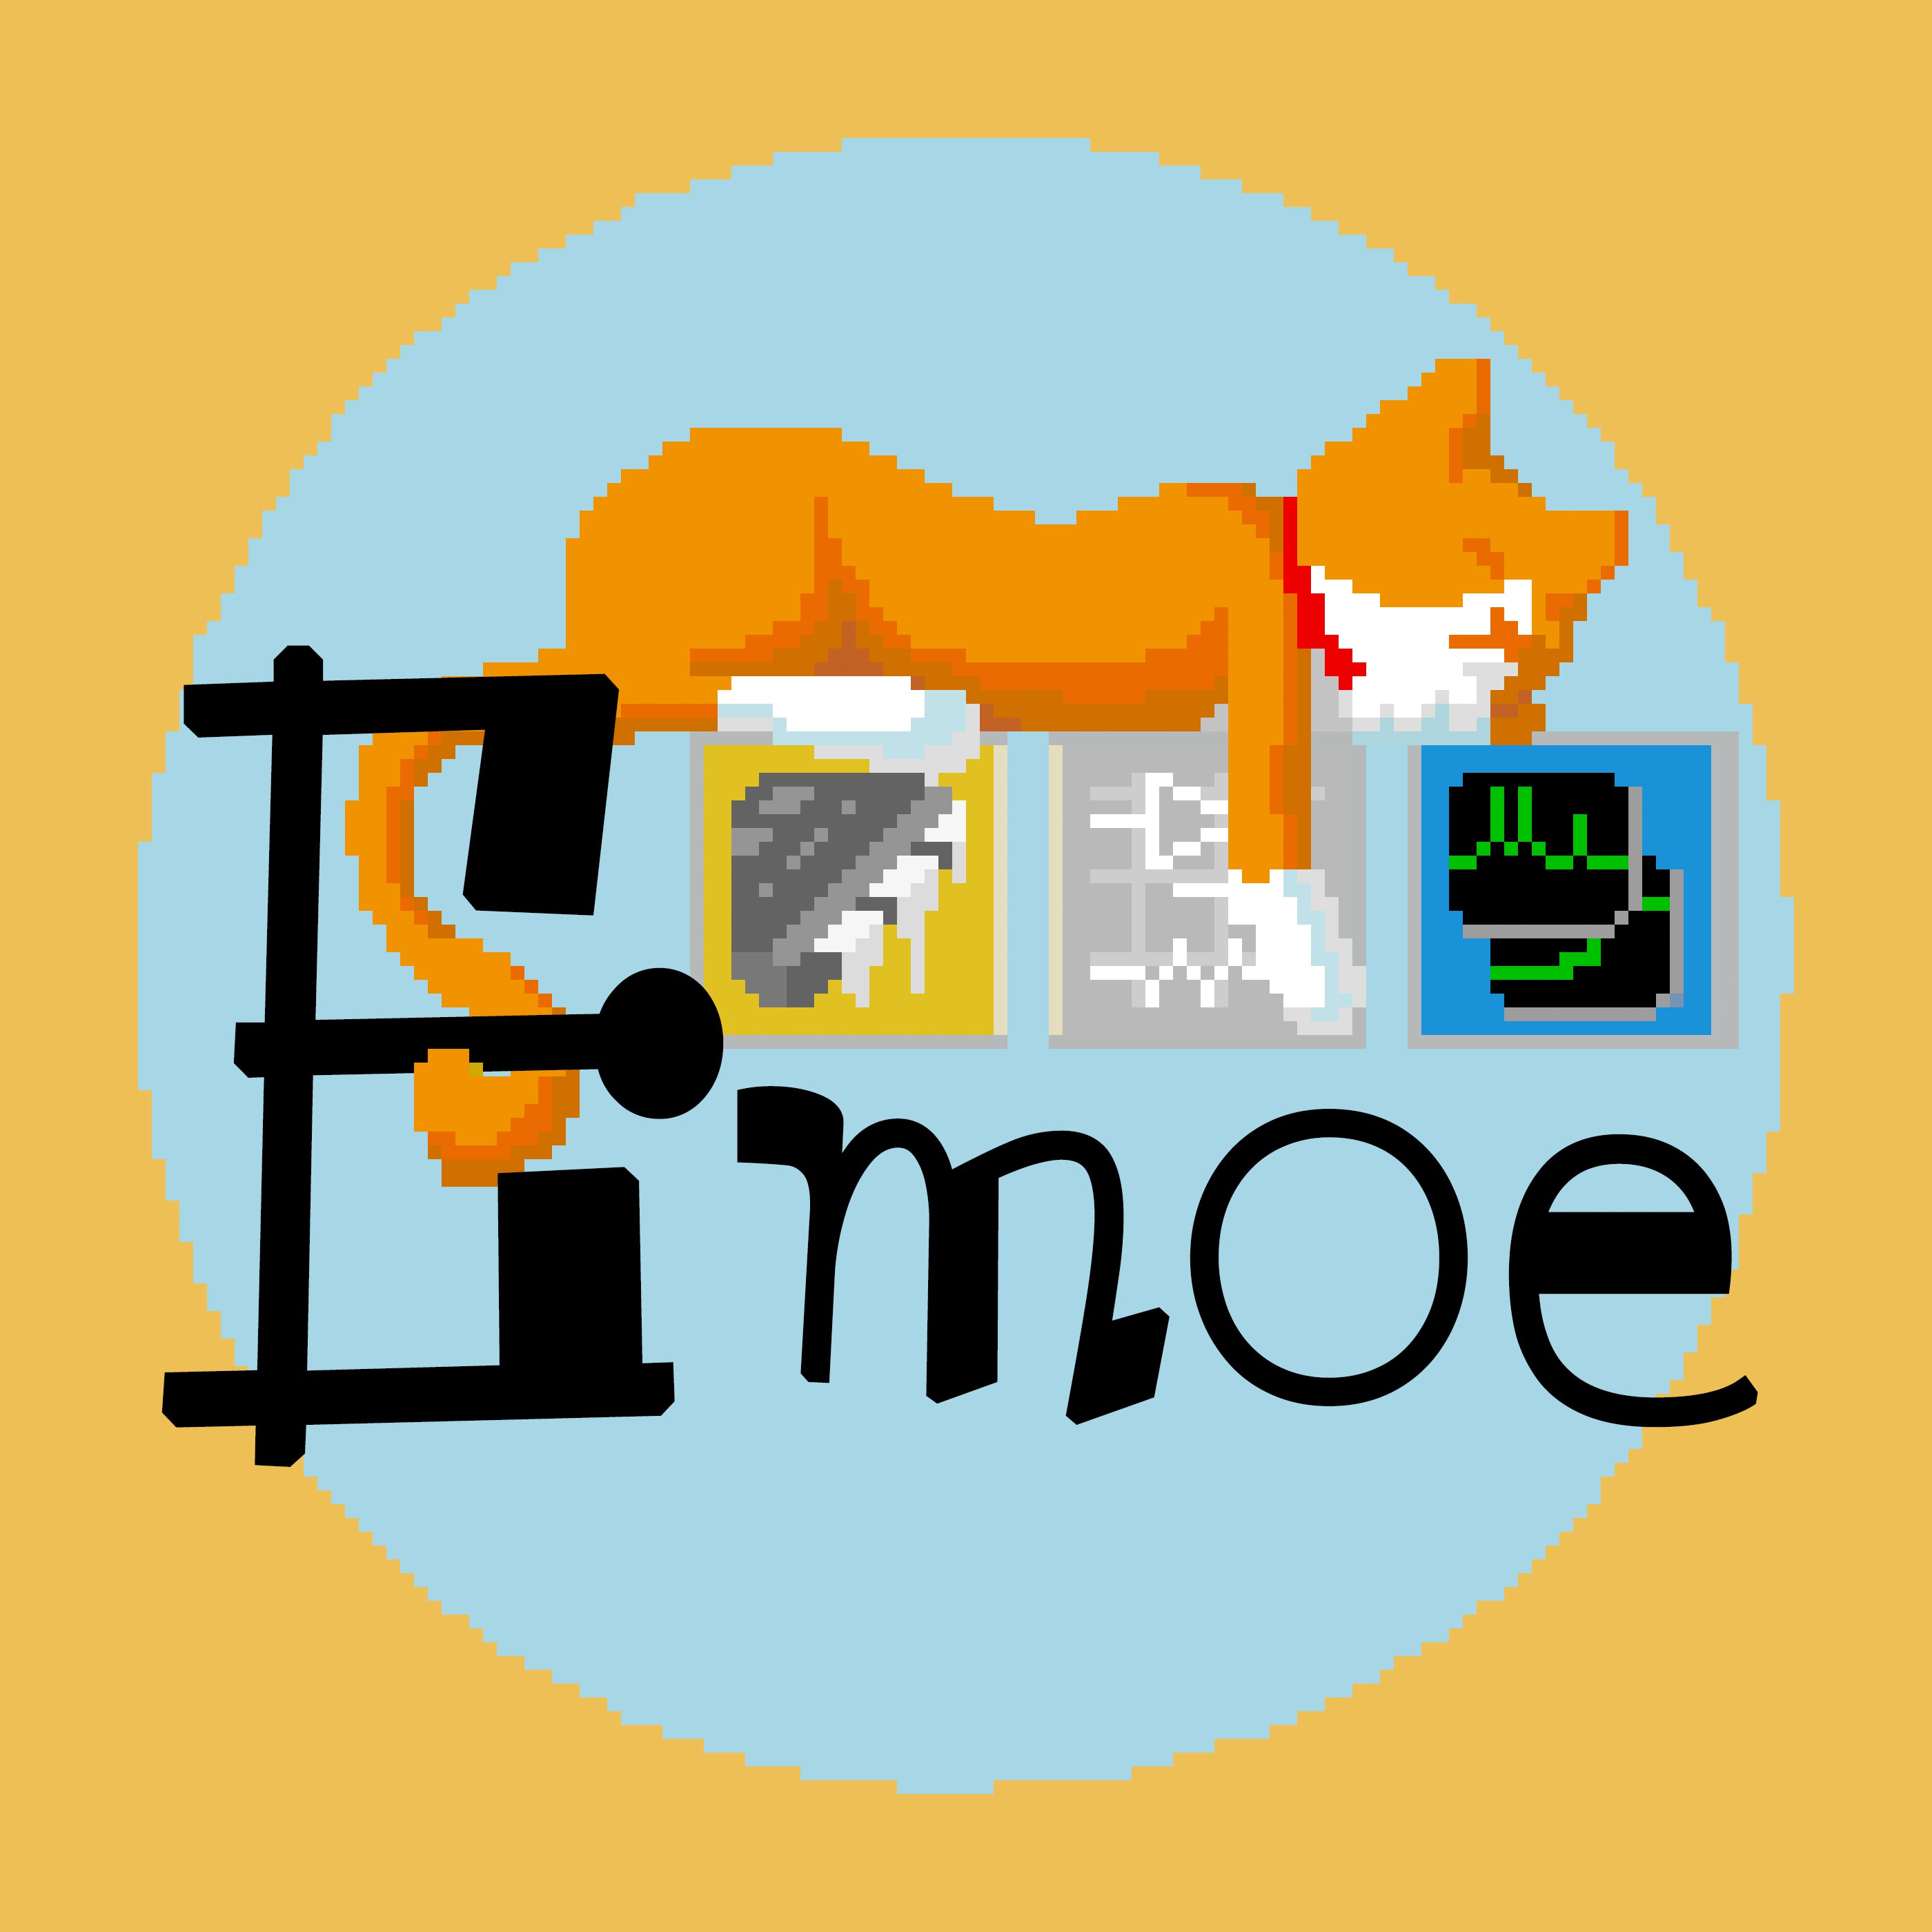 Emoe